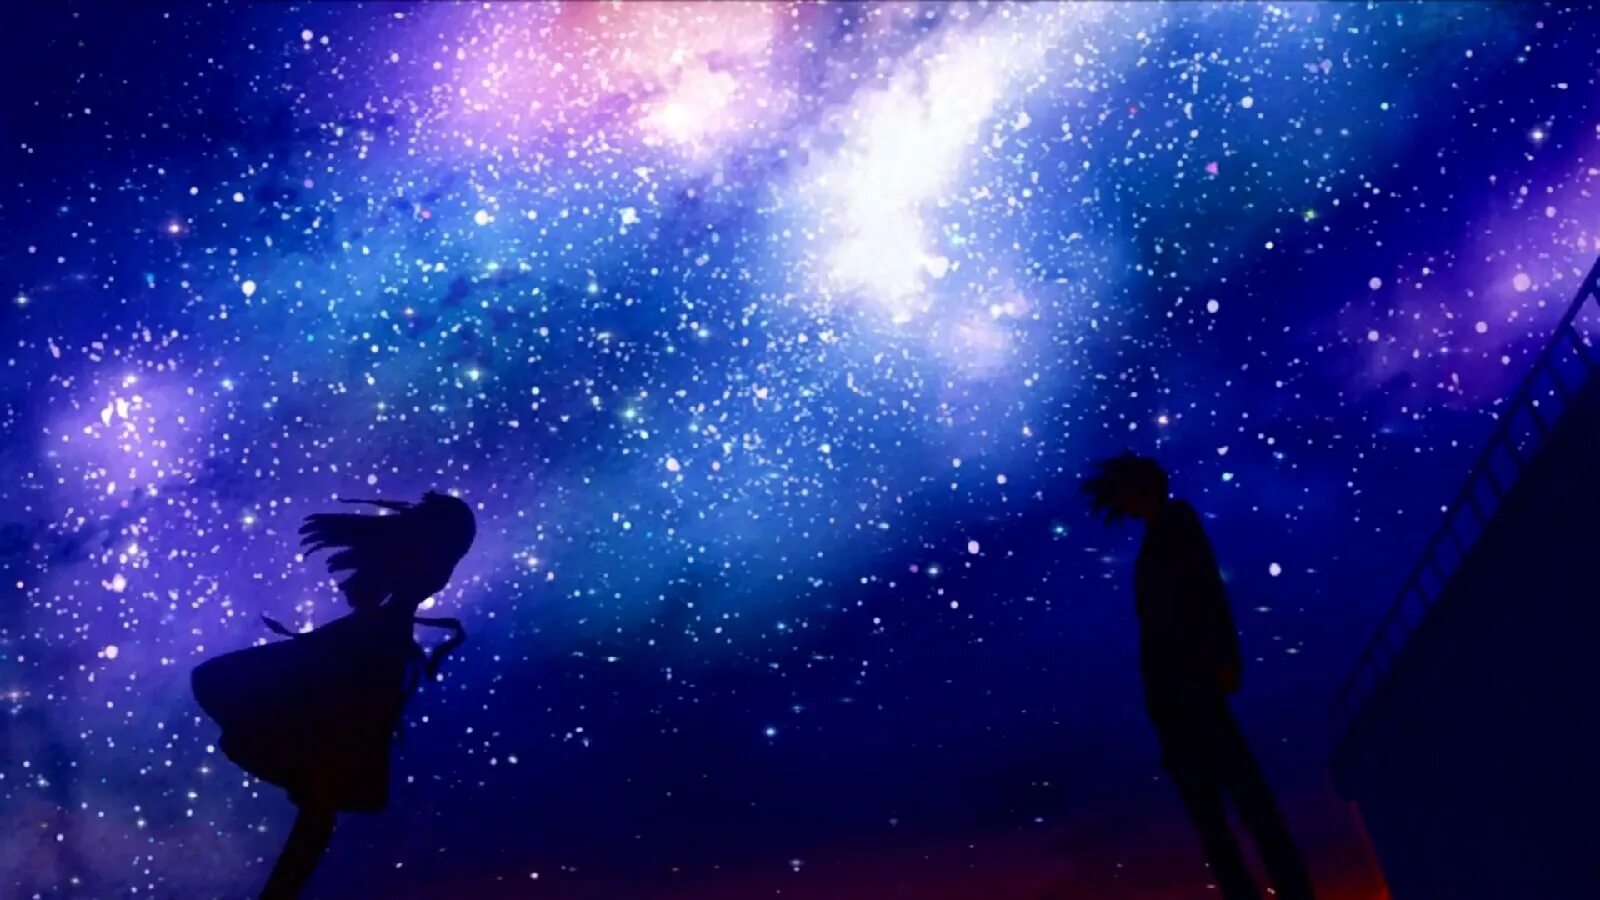 Песня звезды спят на крышах. Звездное небо. Девушка и звездное небо. Ночное звездное небо. Человек на фоне звездного неба.